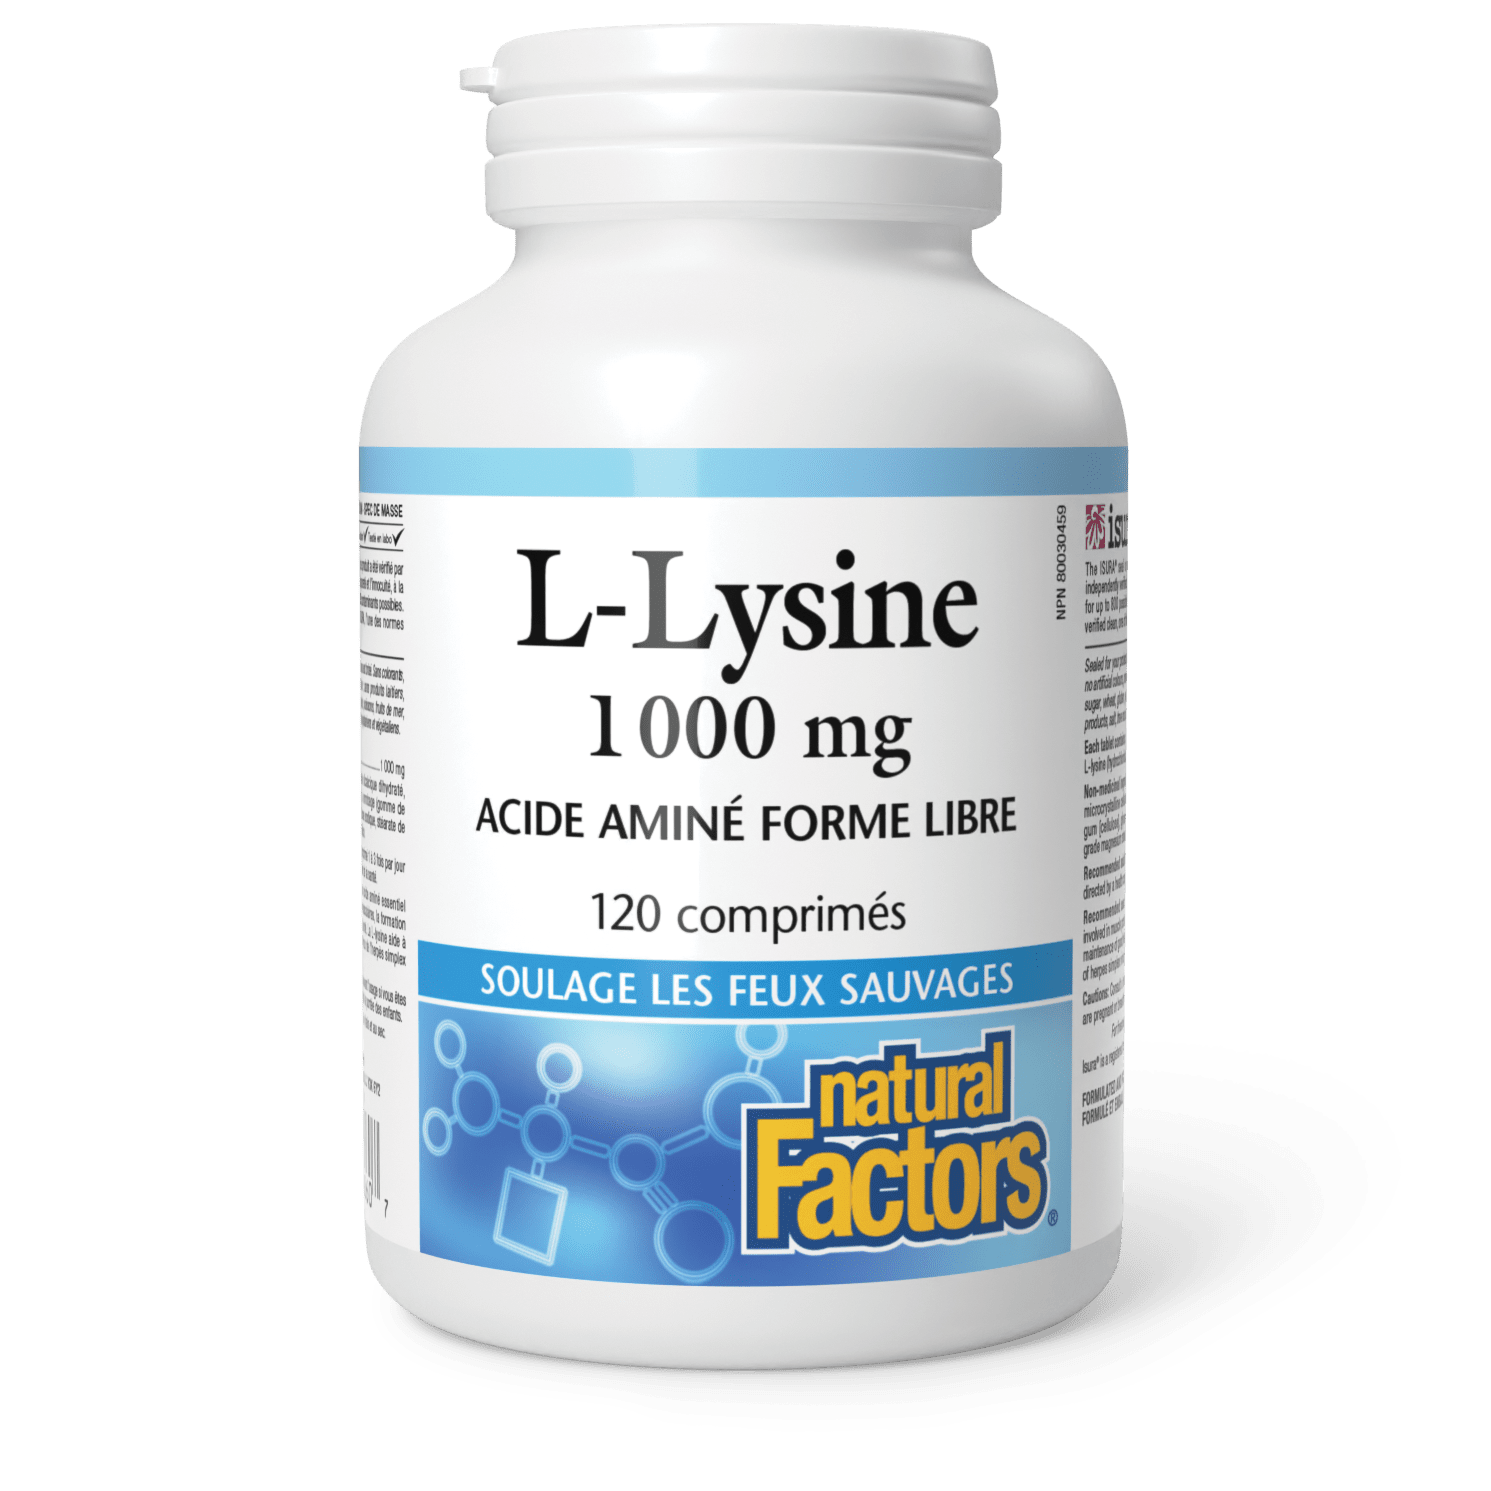 Lysine 1 000 mg, Natural Factors|v|image|2860